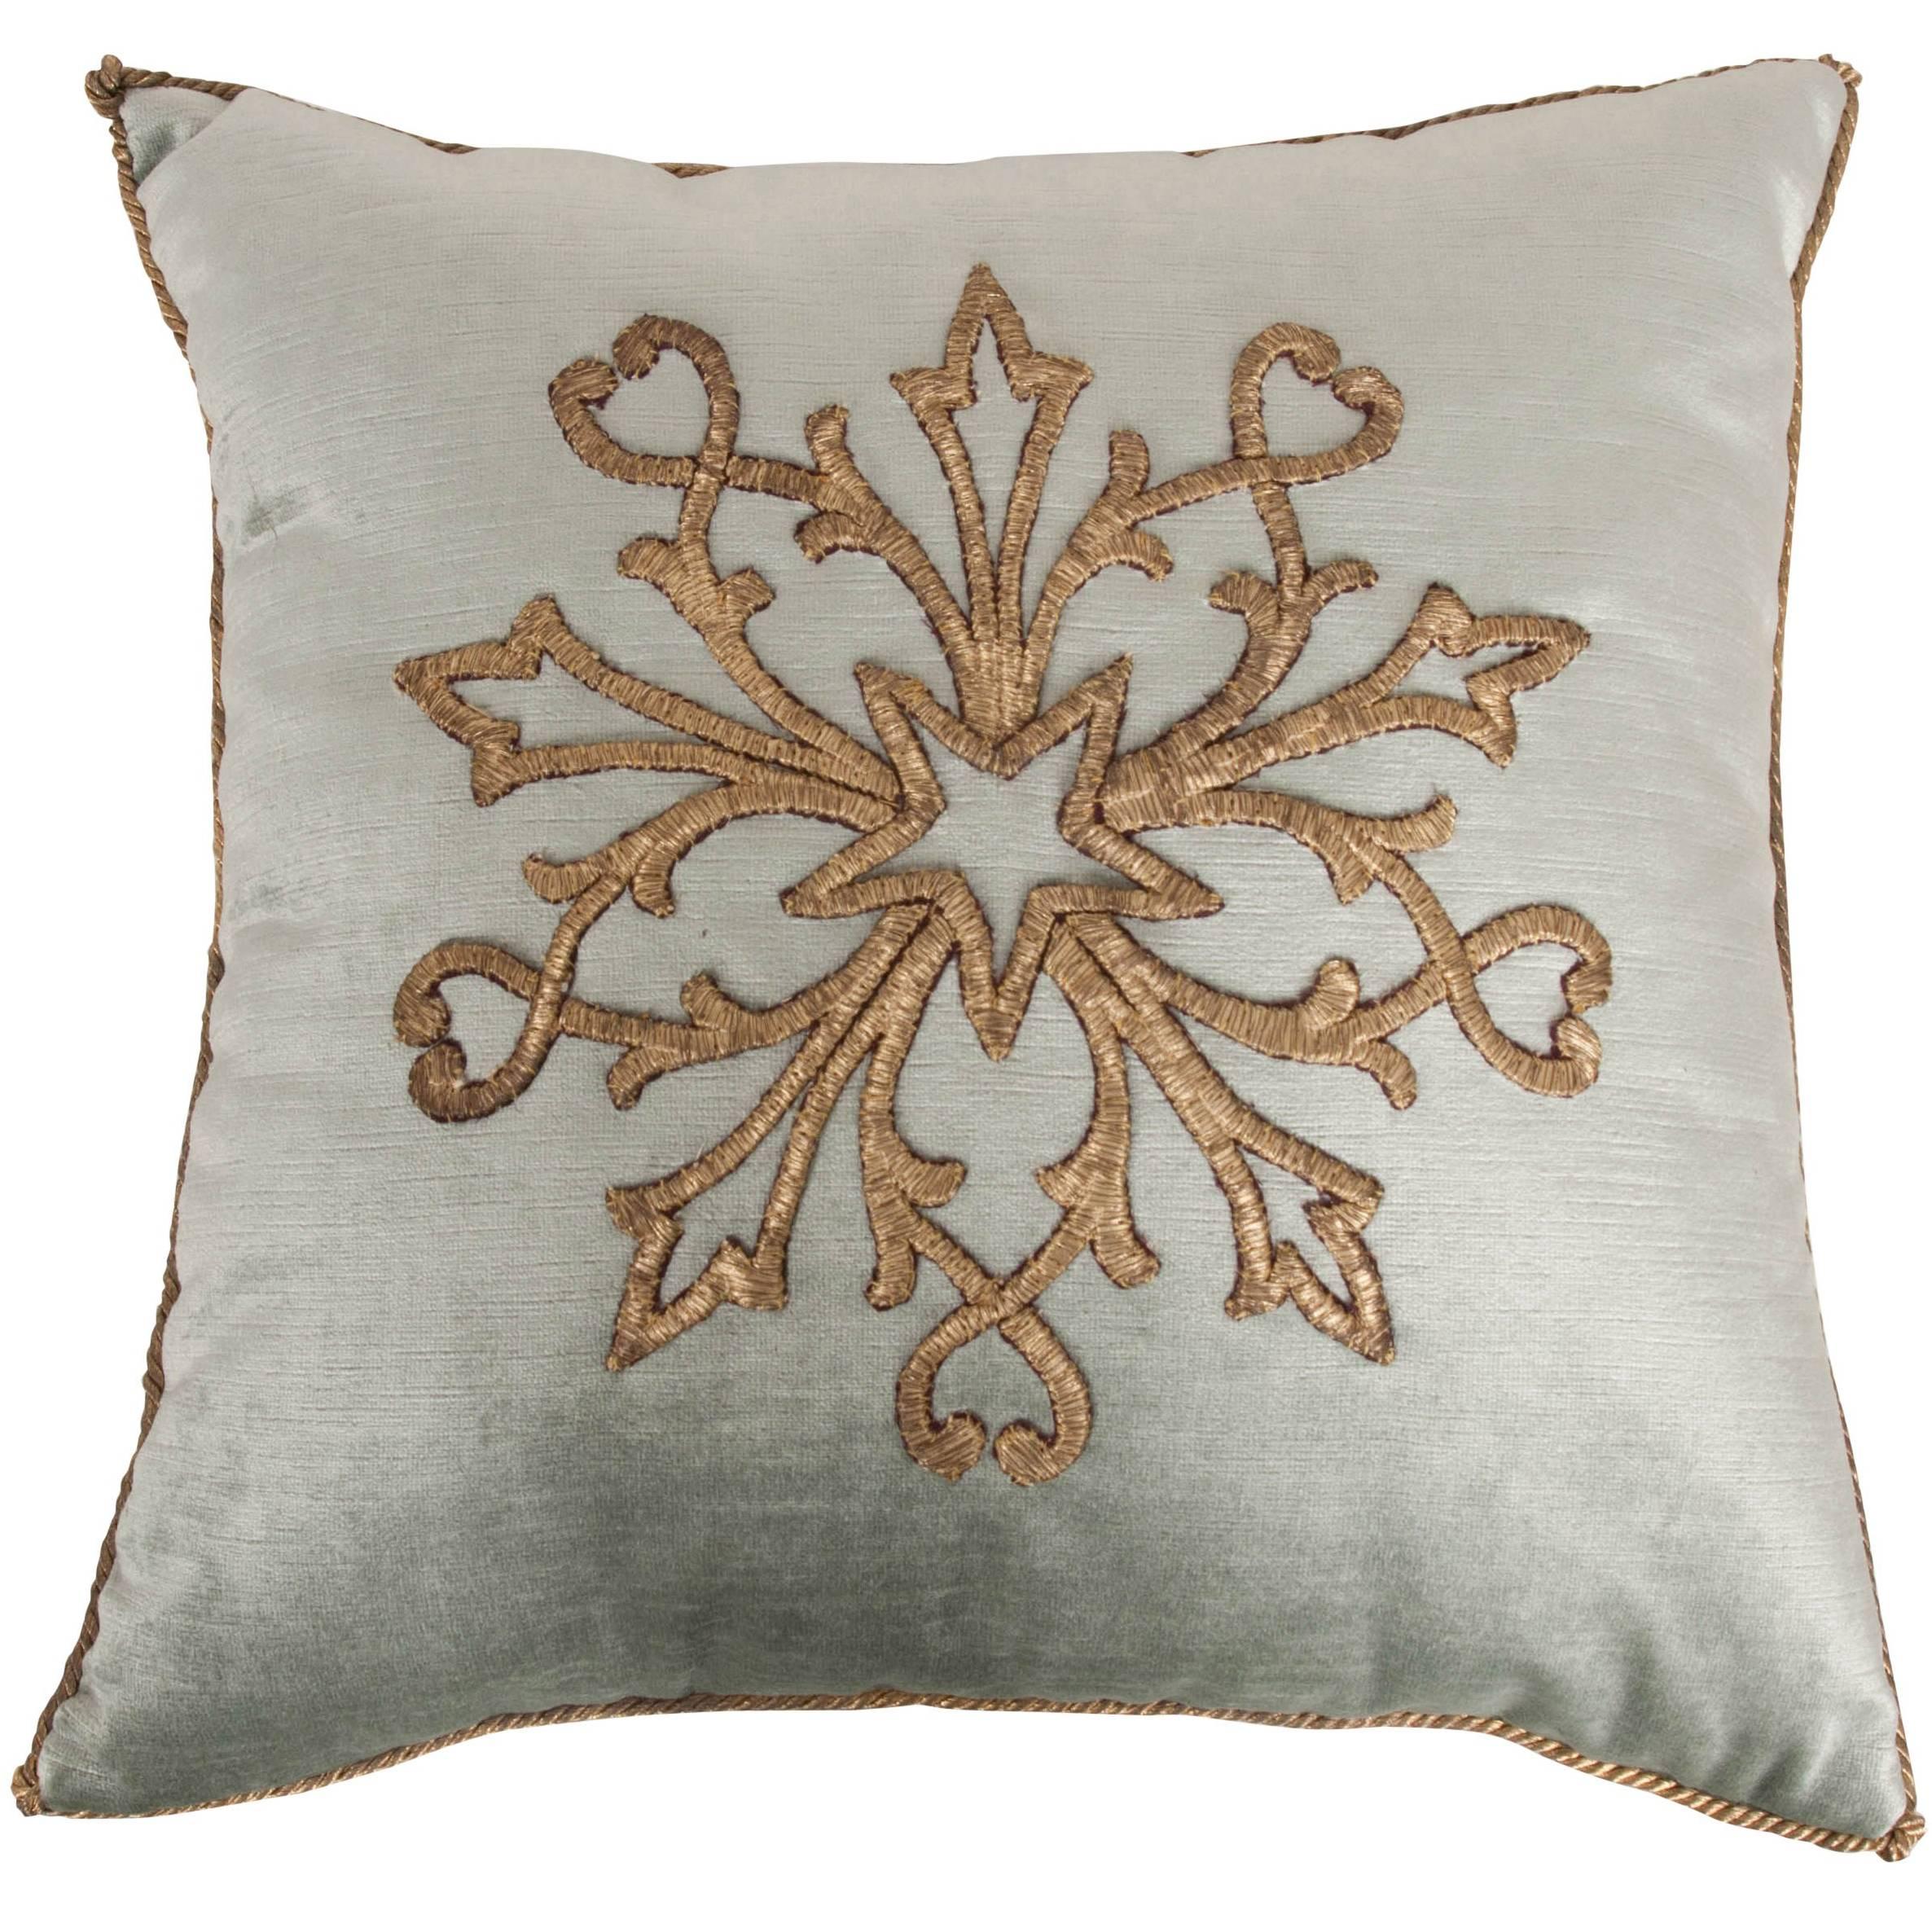 Antique Textile Pillow by B.Viz Design